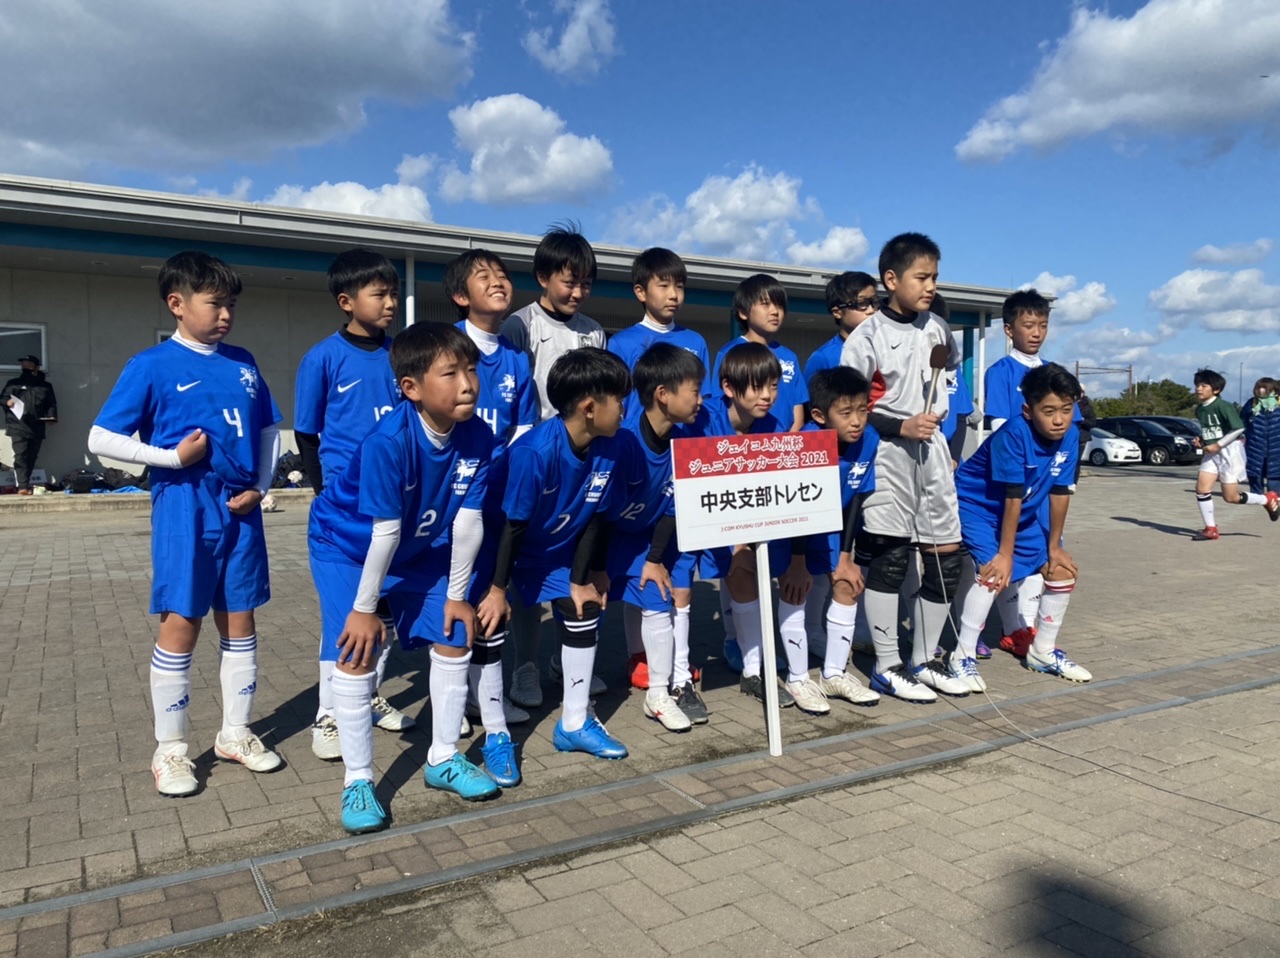 ジェイコム九州杯ジュニアサッカー大会21 福岡市中央区 けごジュニアサッカークラブ